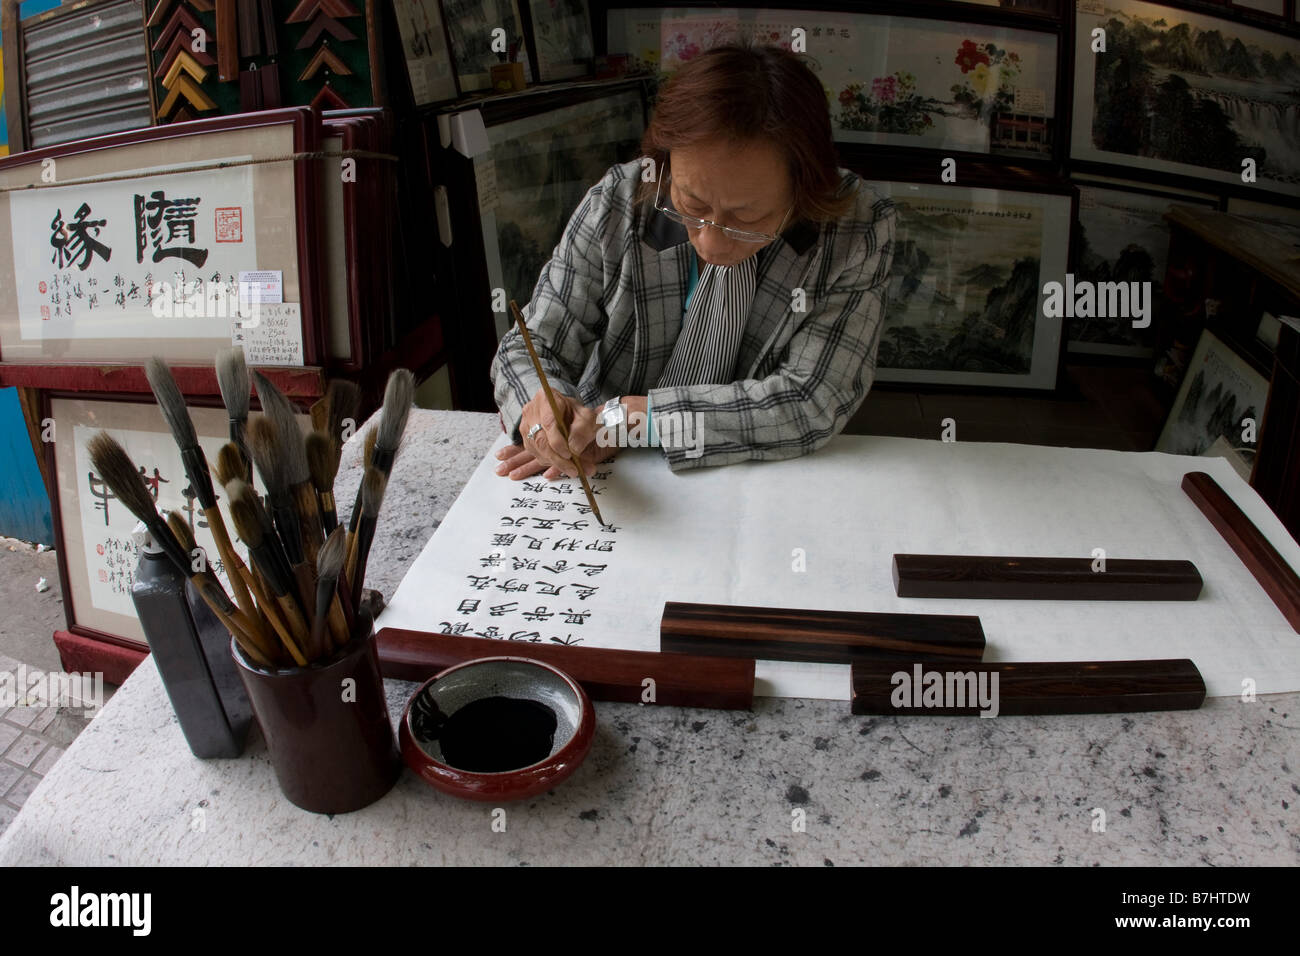 Chinesische artiest und Shop Besitzer sitzen schaffen ein neues Kunstwerk Stück mit chinesischen Kalligraphie Kanton Guangzhou Guangdong China Stockfoto